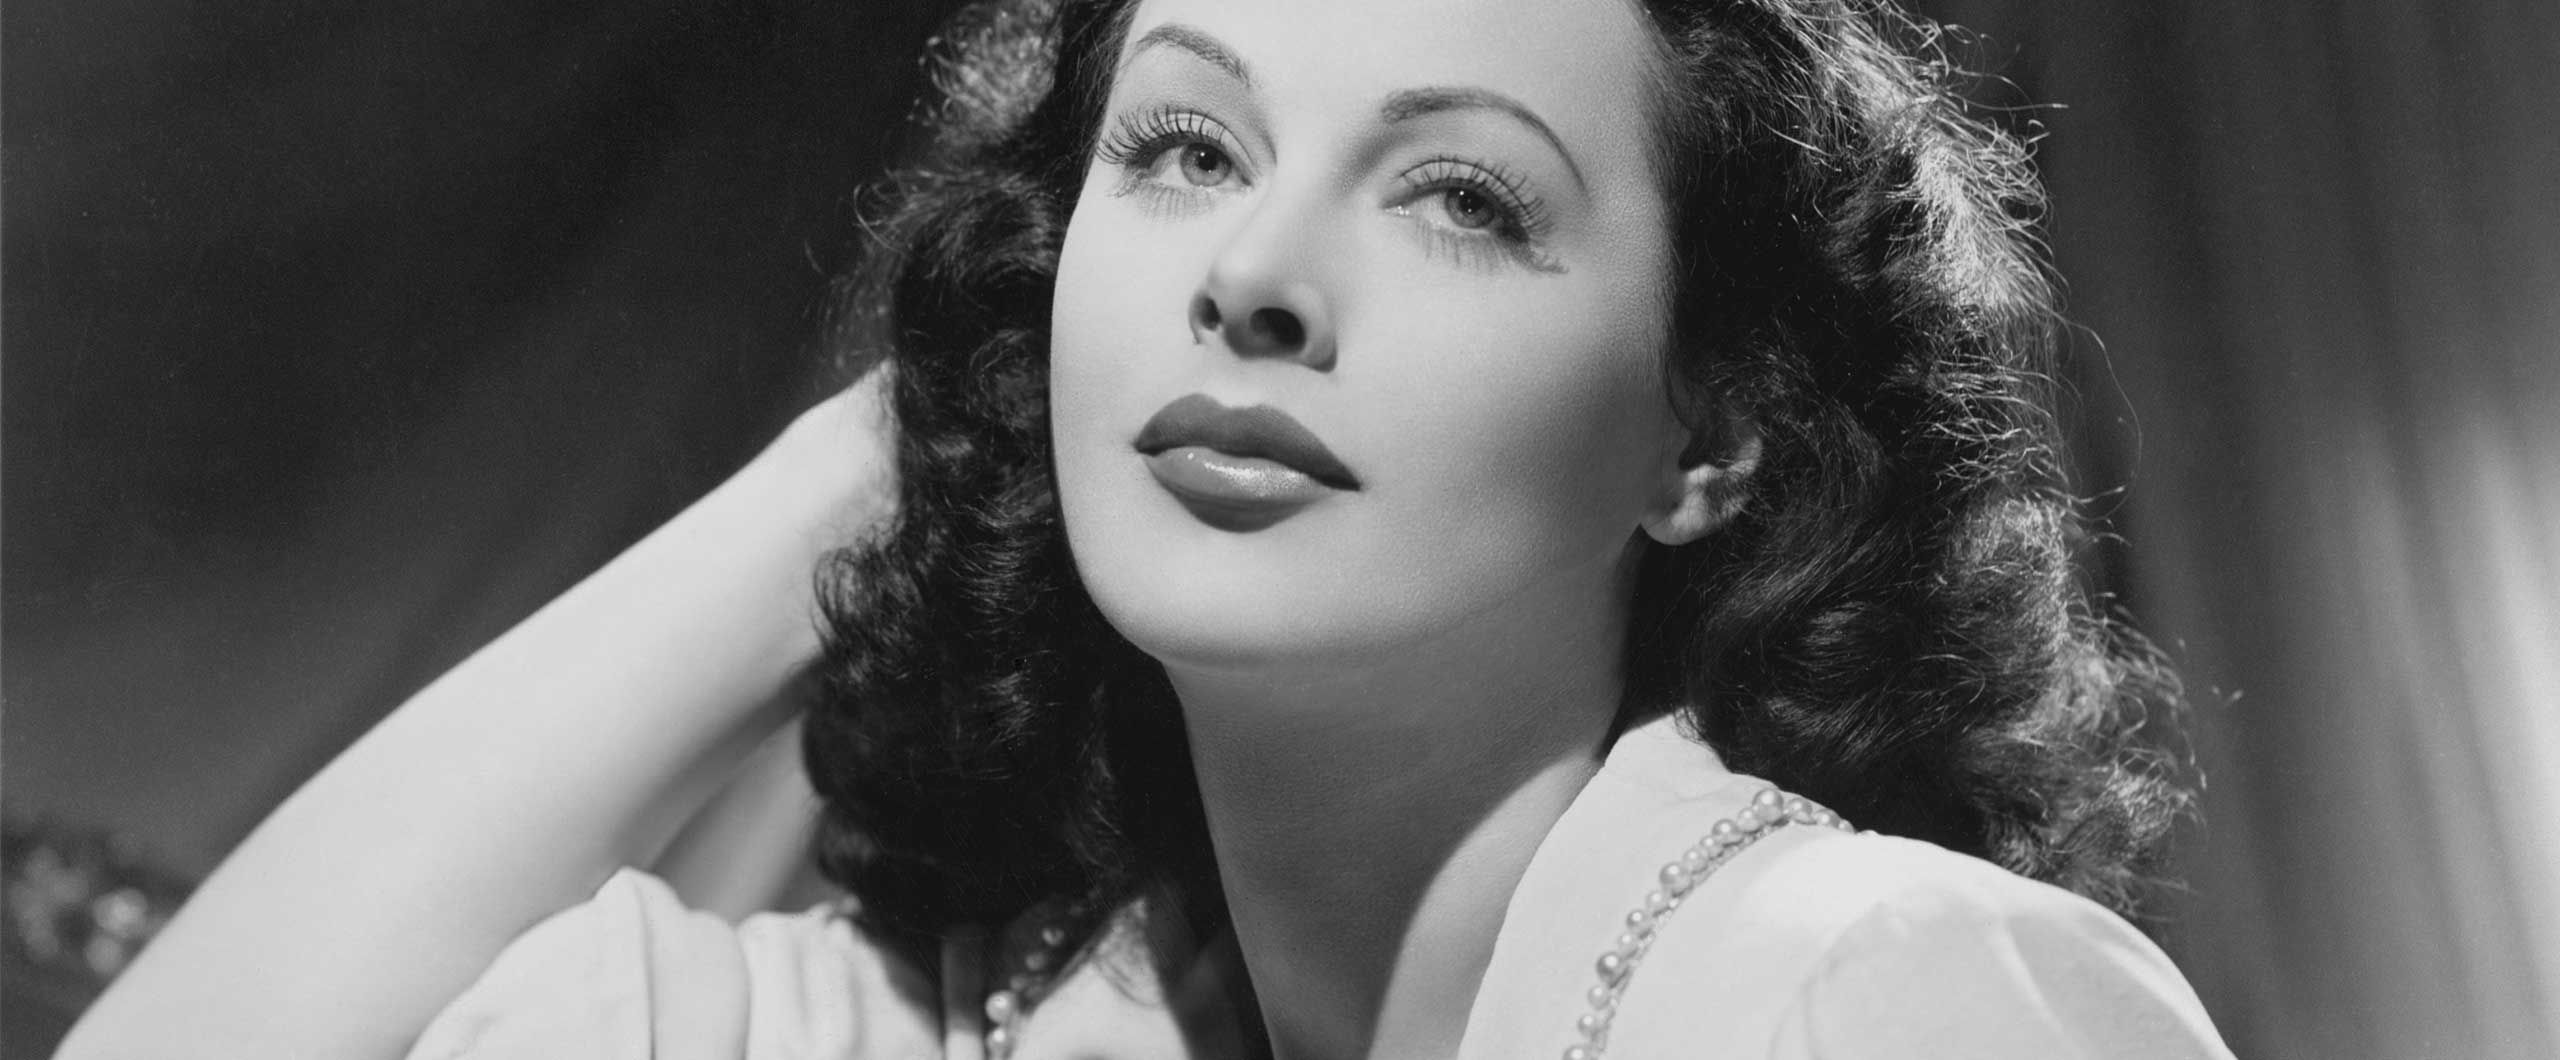 Nude heddy lamarr Hedy Lamarr